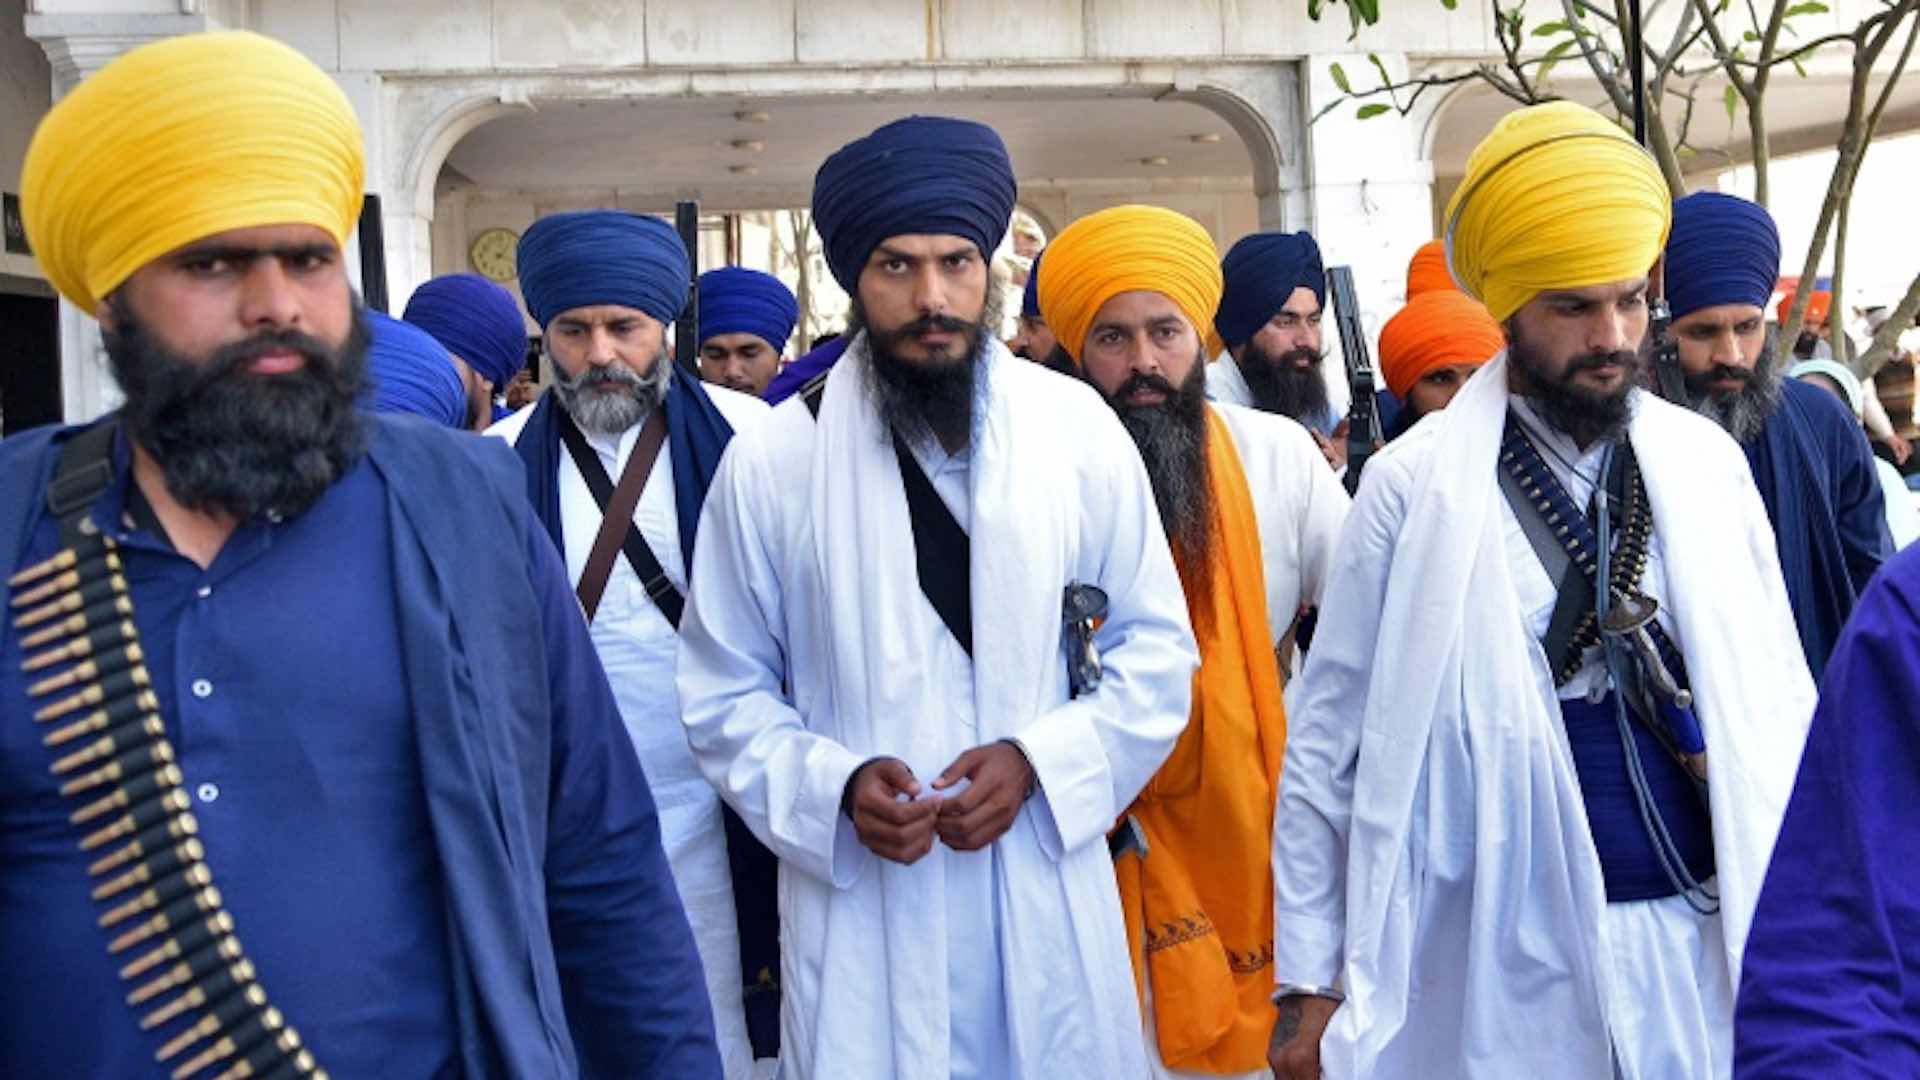 Amritpal Singh, Sikh separatist inciting violence, arrested in Punjab